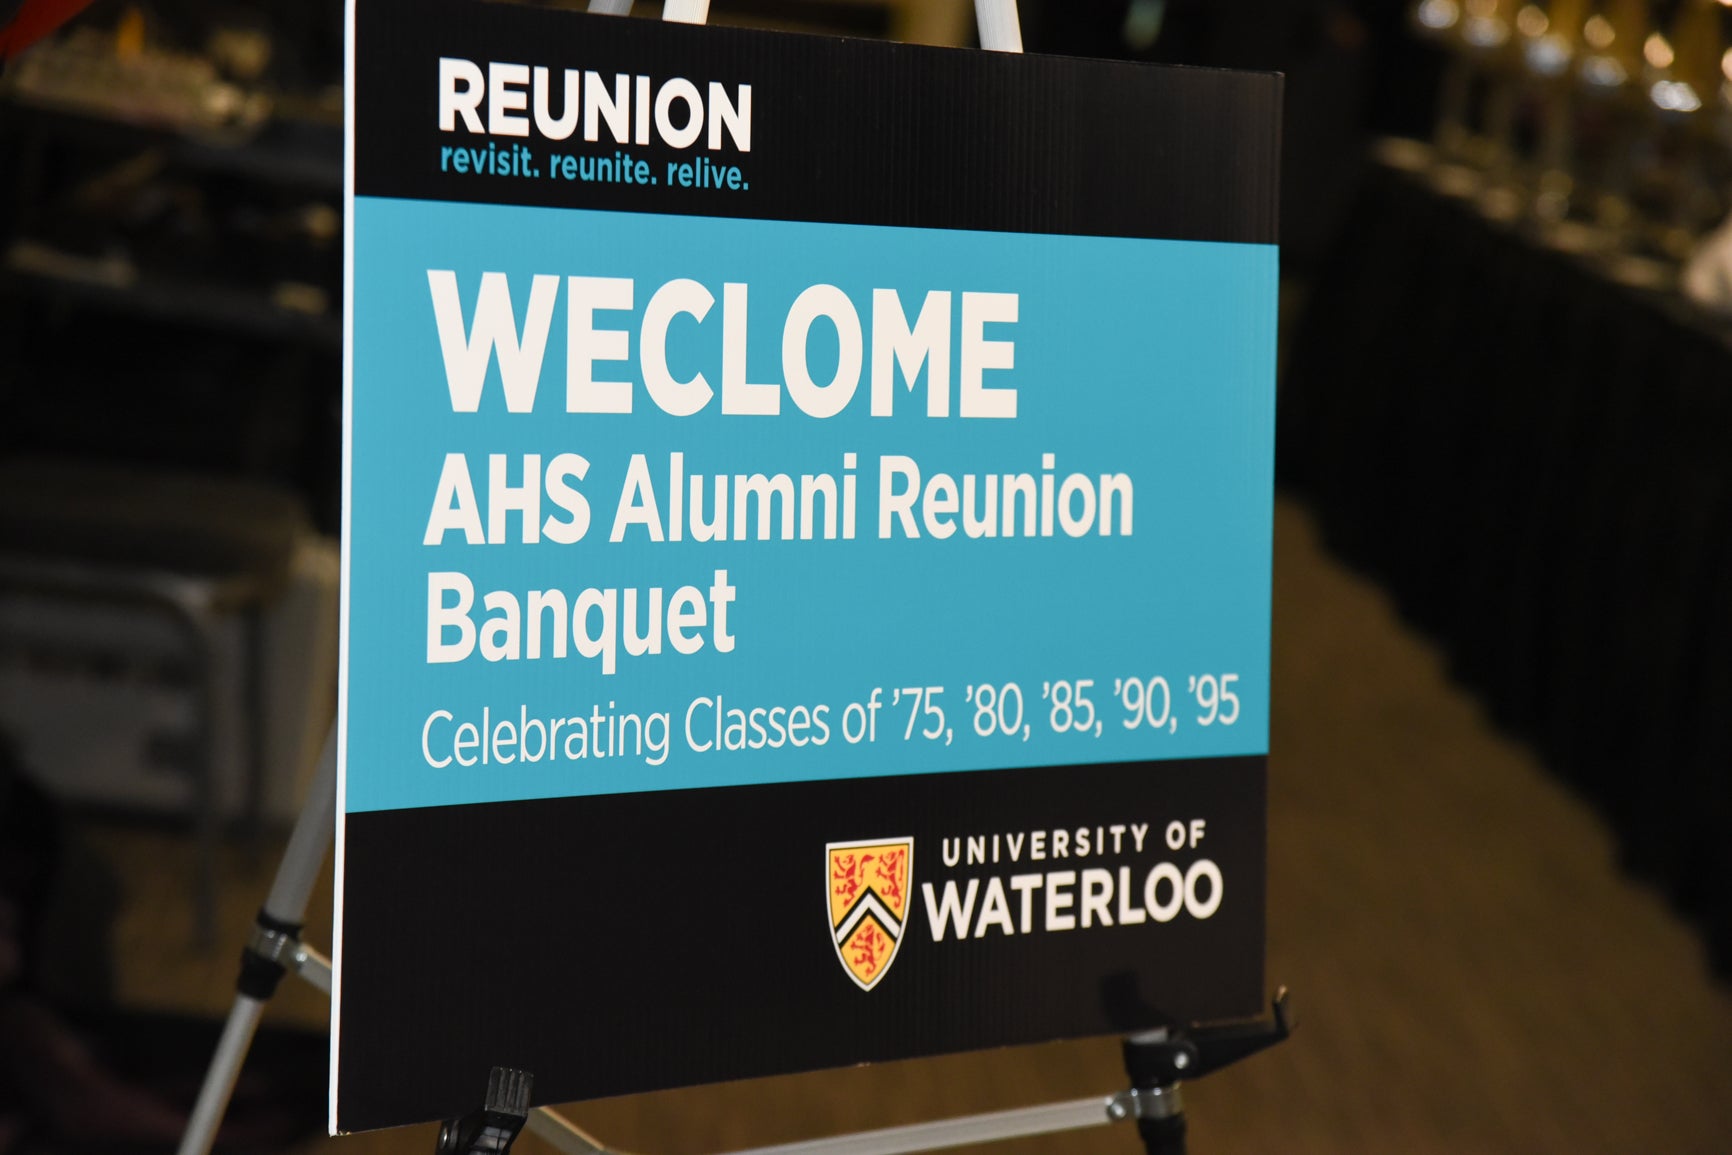 AHS Alumni Reunion Banquet sign